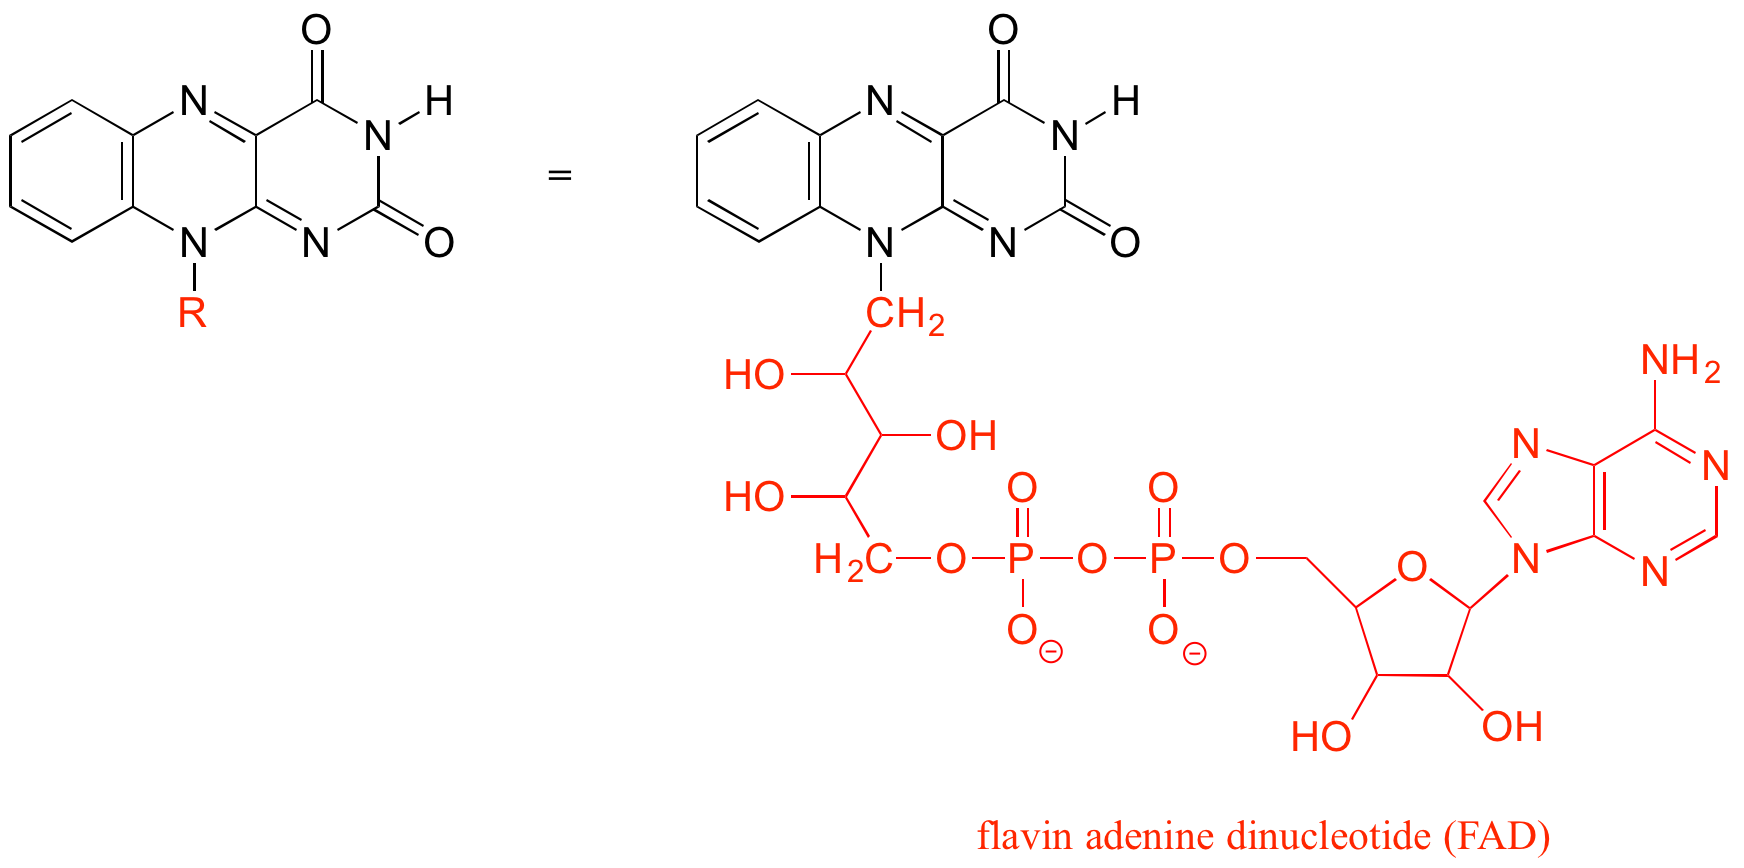 A la izquierda: molécula de flavina con la cadena carbonada compleja unida a un nitrógeno abreviado como R. A la derecha: la molécula de flavina con la cadena carbonada compleja unida a un nitrógeno escrito en rojo.